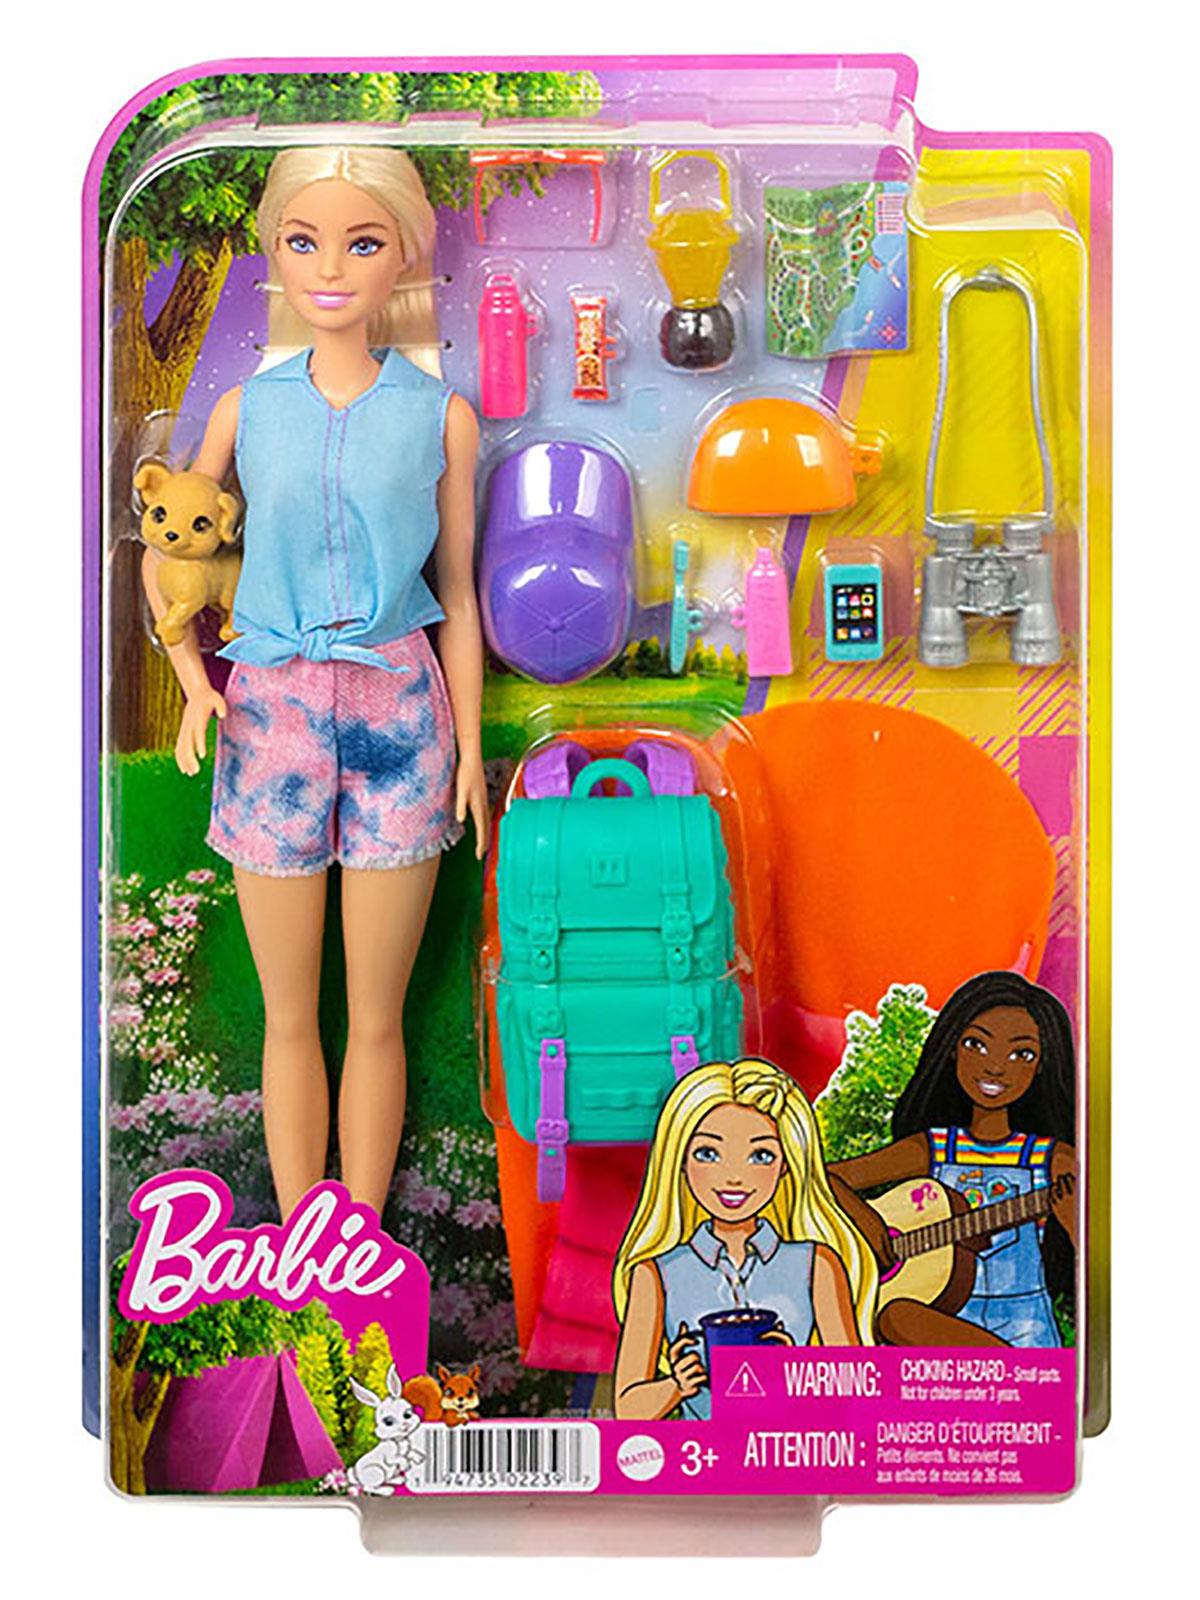 Barbie'nin Kız Kardeşleri Kampa Gidiyor Oyun Seti HDF69-HDF71 Pembe